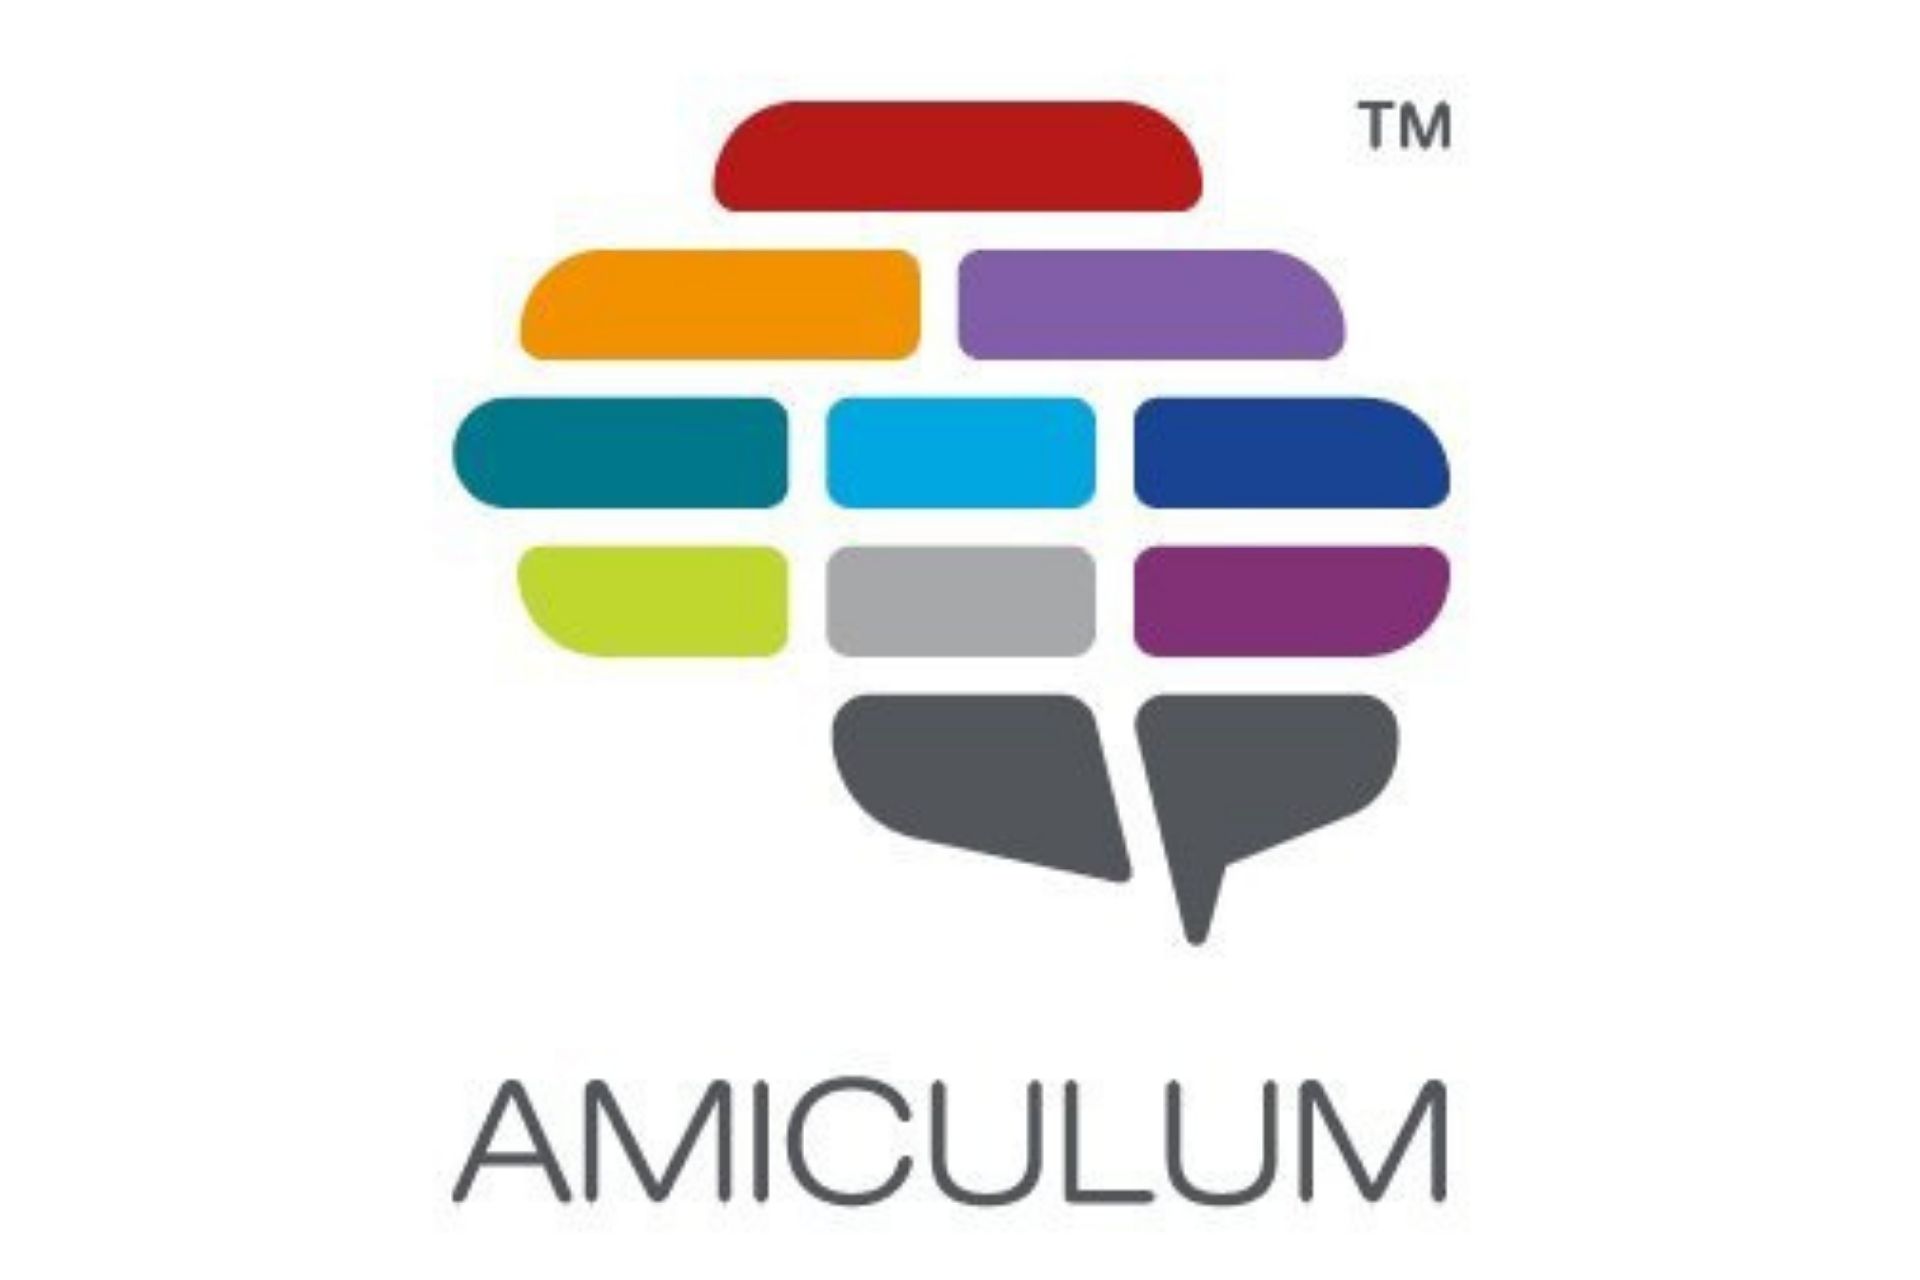 Amiculum logo